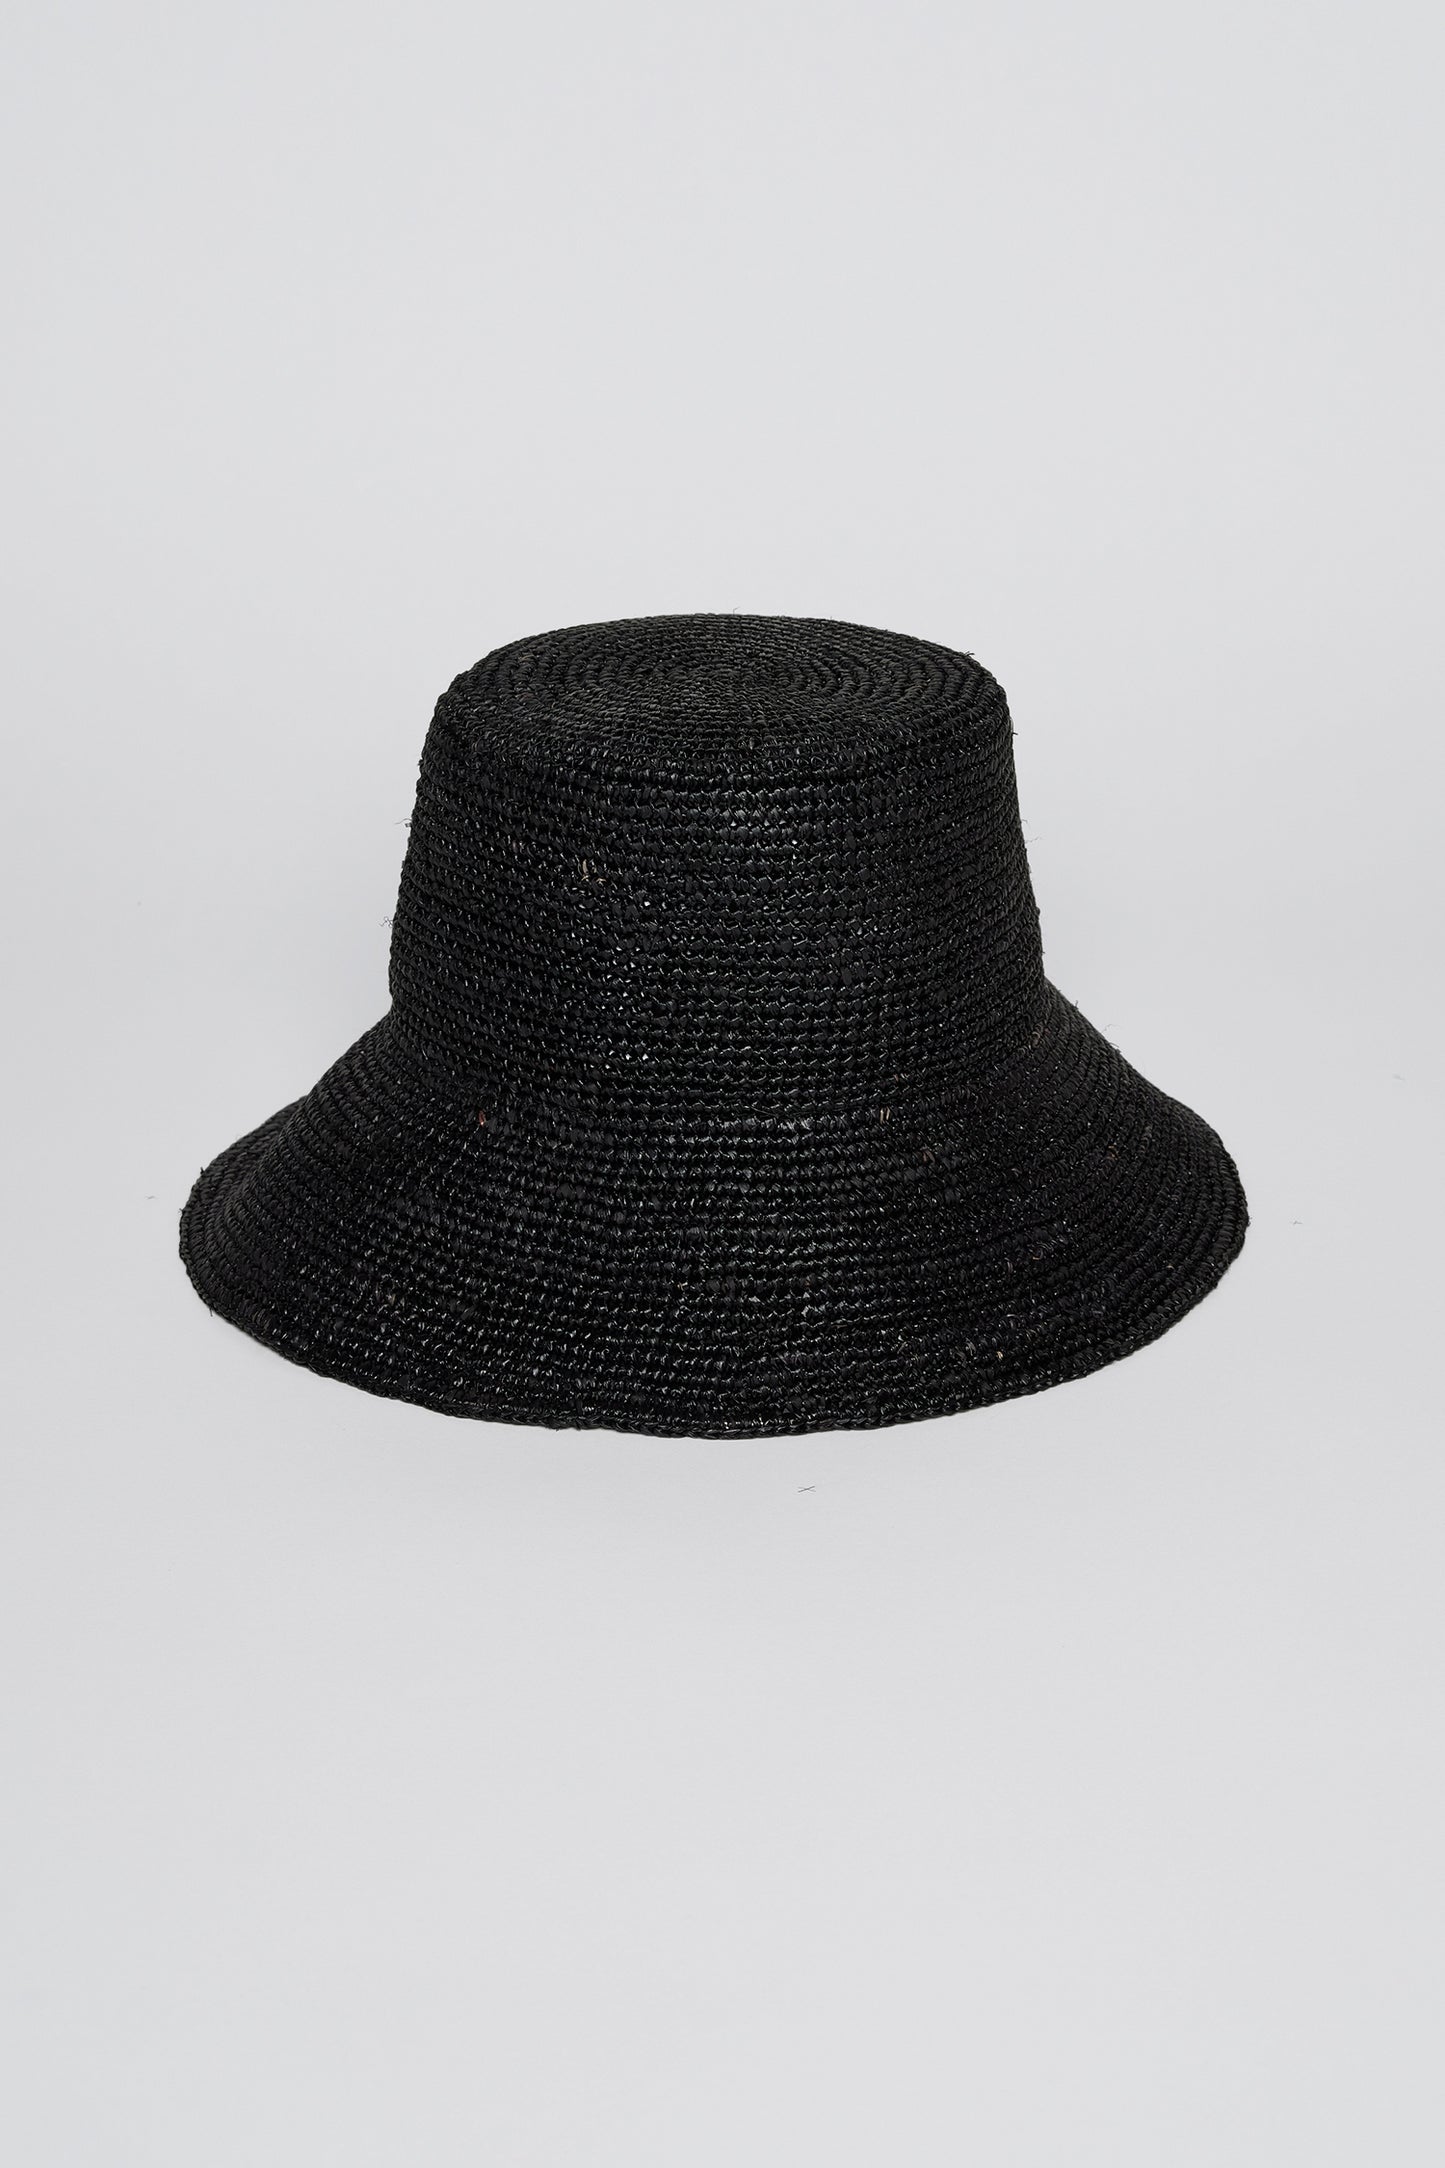 a Velvet by Graham & Spencer CHIC CROCHET BUCKET HAT on a white background.-26537723101377